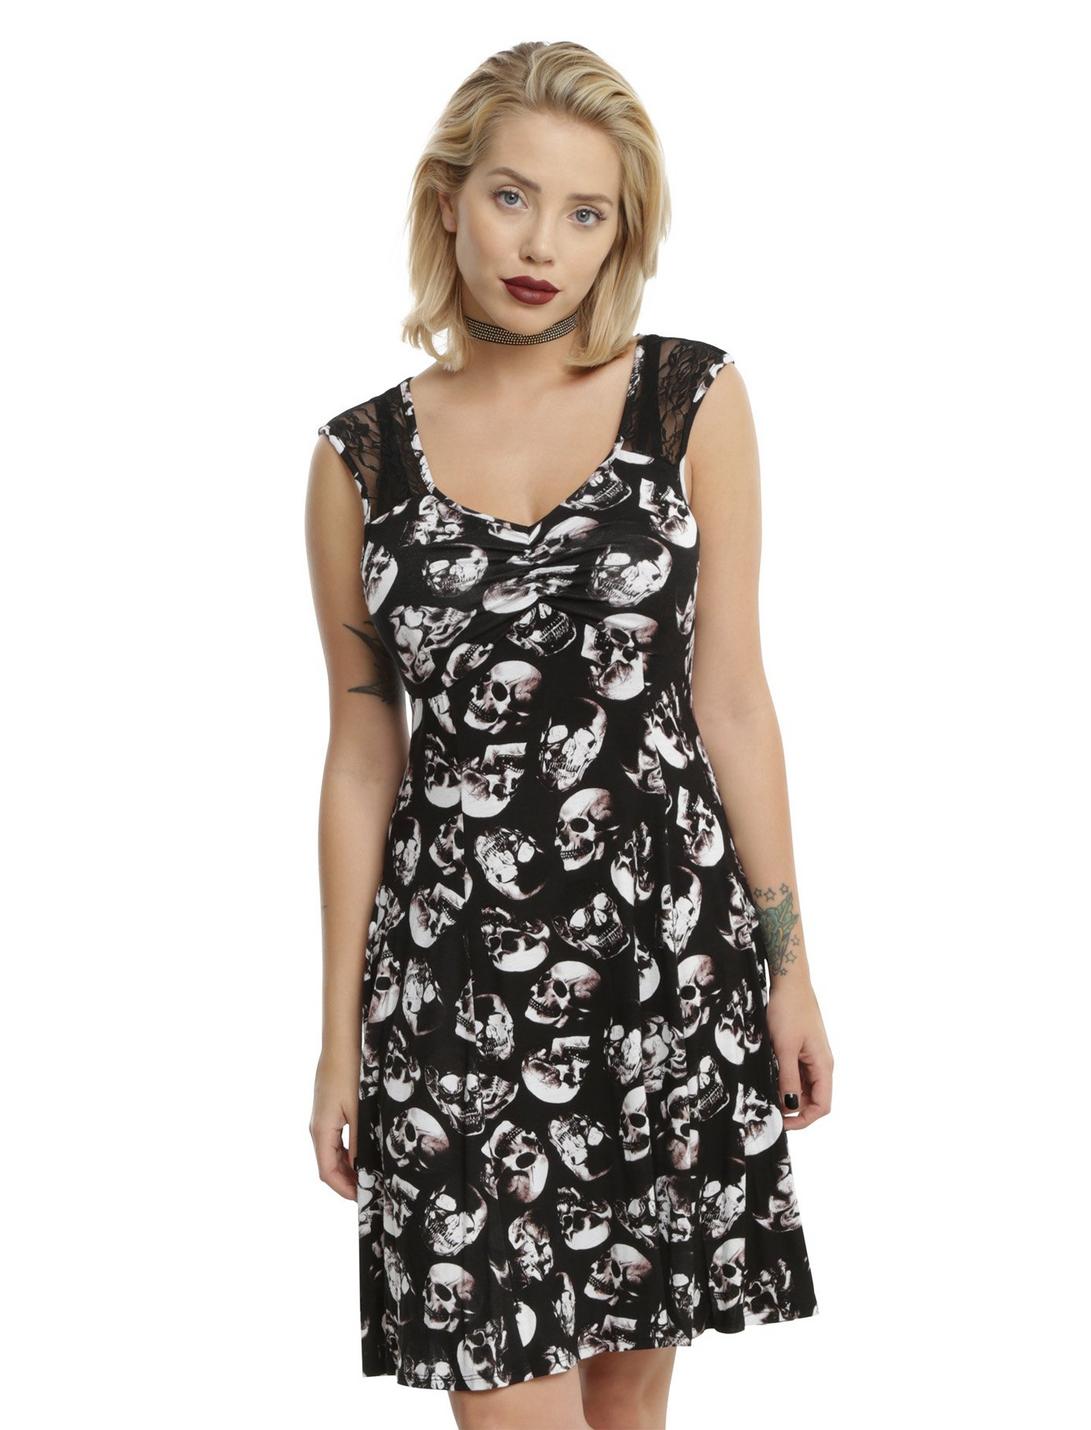 Black & White Skull Print Lace Cap Sleeve Dress, BLACK, hi-res